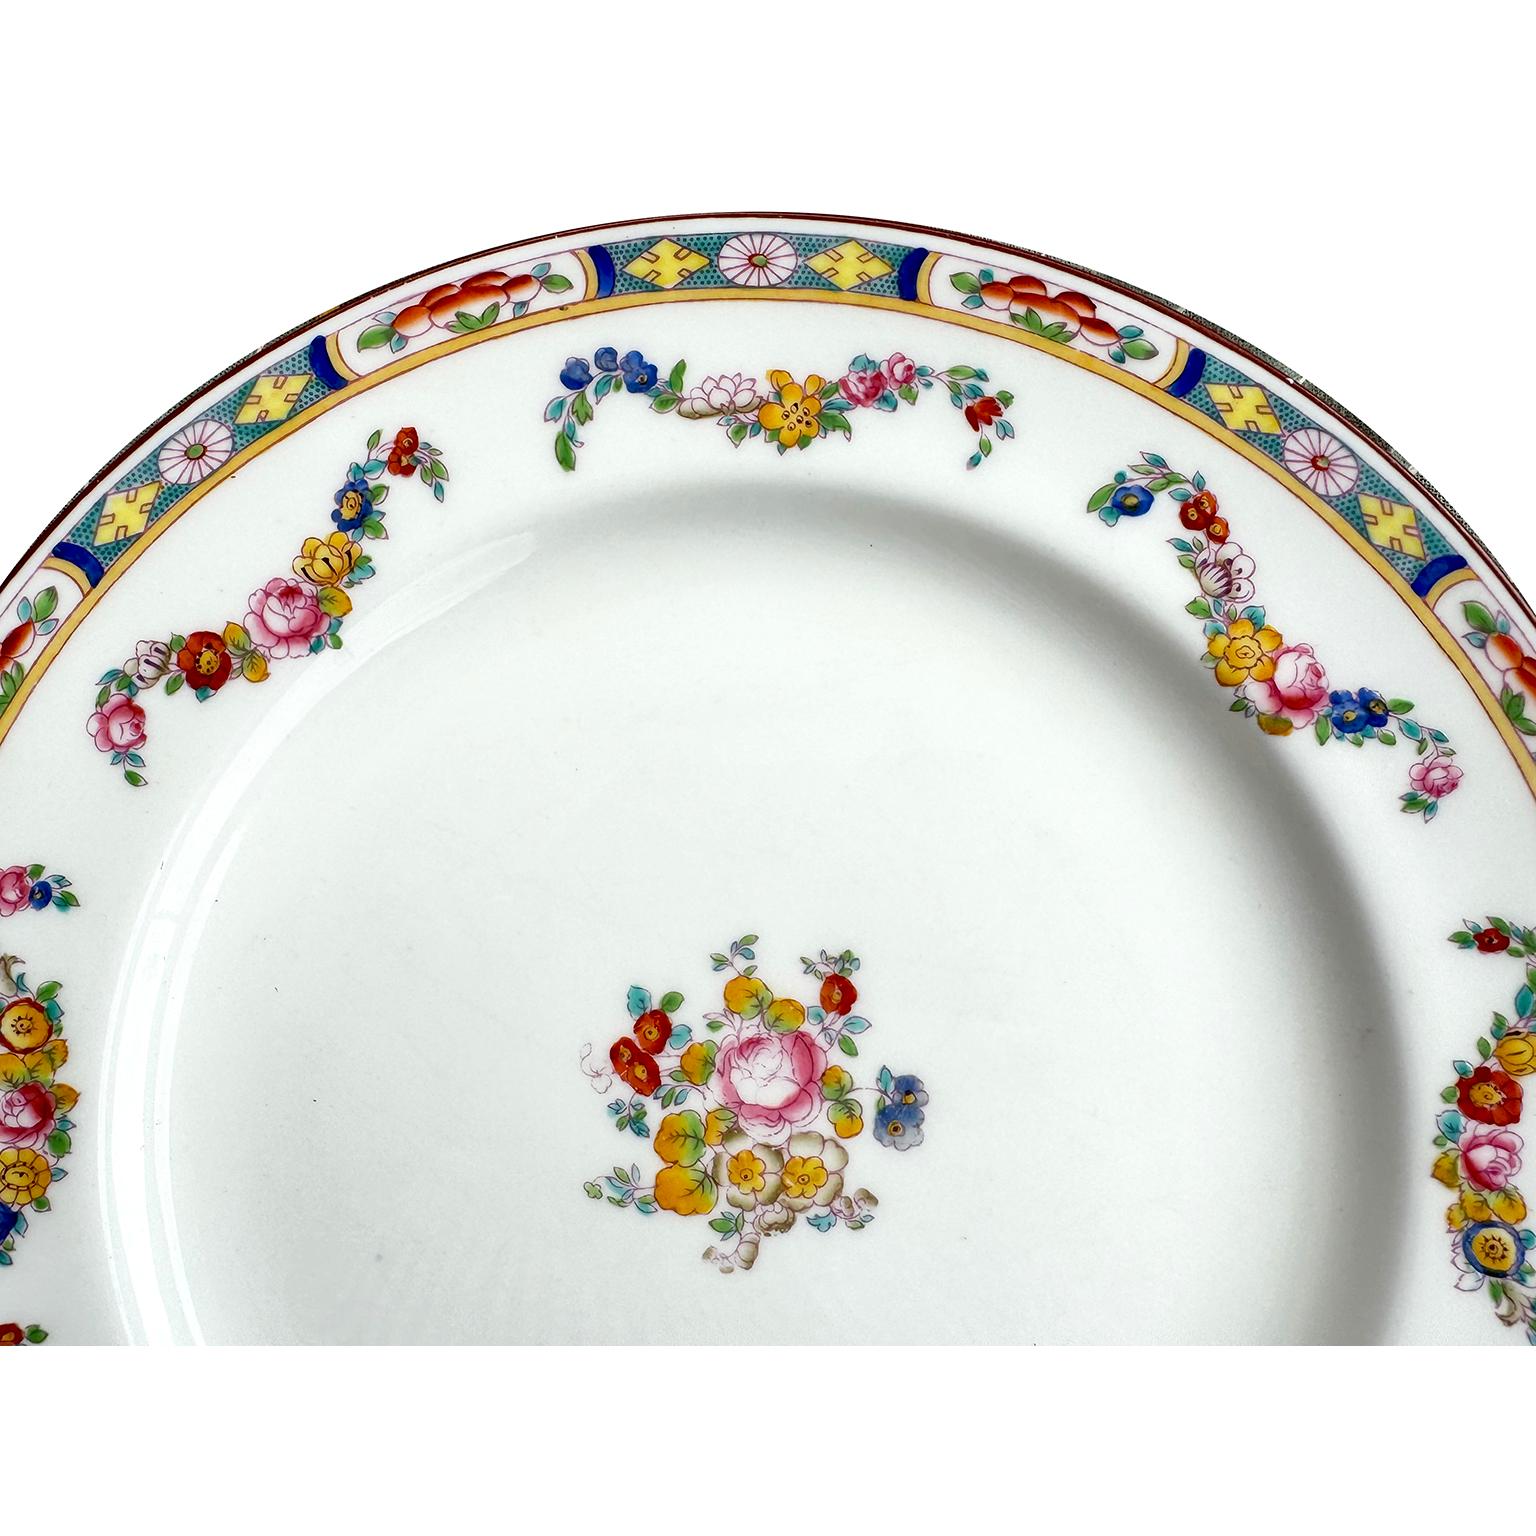 Ensemble de 34 assiettes à manger anglaises en porcelaine fine de Minton décorées à la main. Les assiettes à dîner magnifiquement peintes à la main en couleurs vives, chacune avec un motif floral coloré, une garniture complexe et des brins floraux